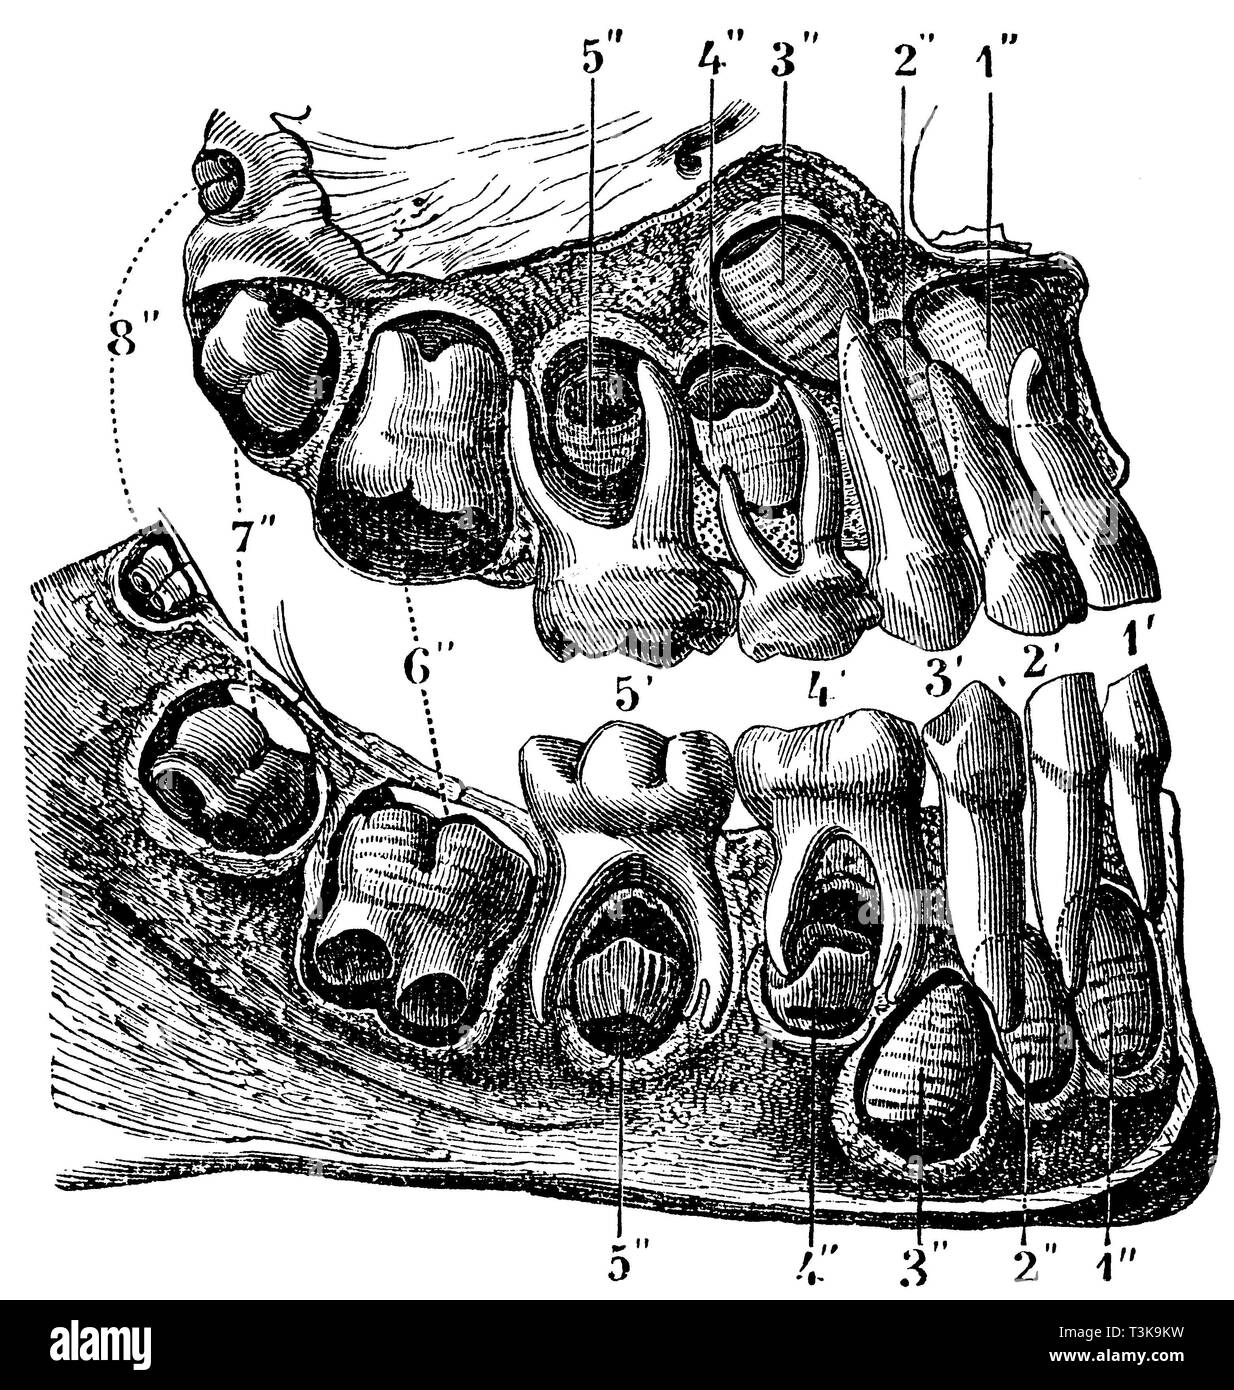 Première et deuxième dents de l'humaine 1 3 '2' '4' et 5 ', les dents de la denture d'abord (dents de lait) ; 1'' à 8'' sont les dents de la deuxième la denture. 1 '1'' 2' et 2'' ; '3 incisives et 3 canines'', 4' 4'' à 8'';Première et deuxième molaires dents humaines 1' 2' 3' 4' et 5' sont les dents de la première dent (dents de lait) ; 1' à 8'' sont les dents de la deuxième dent. 1' 1'' 2' et 2''' et 3 incisives, 3 canines, anonym'' 1877 Banque D'Images